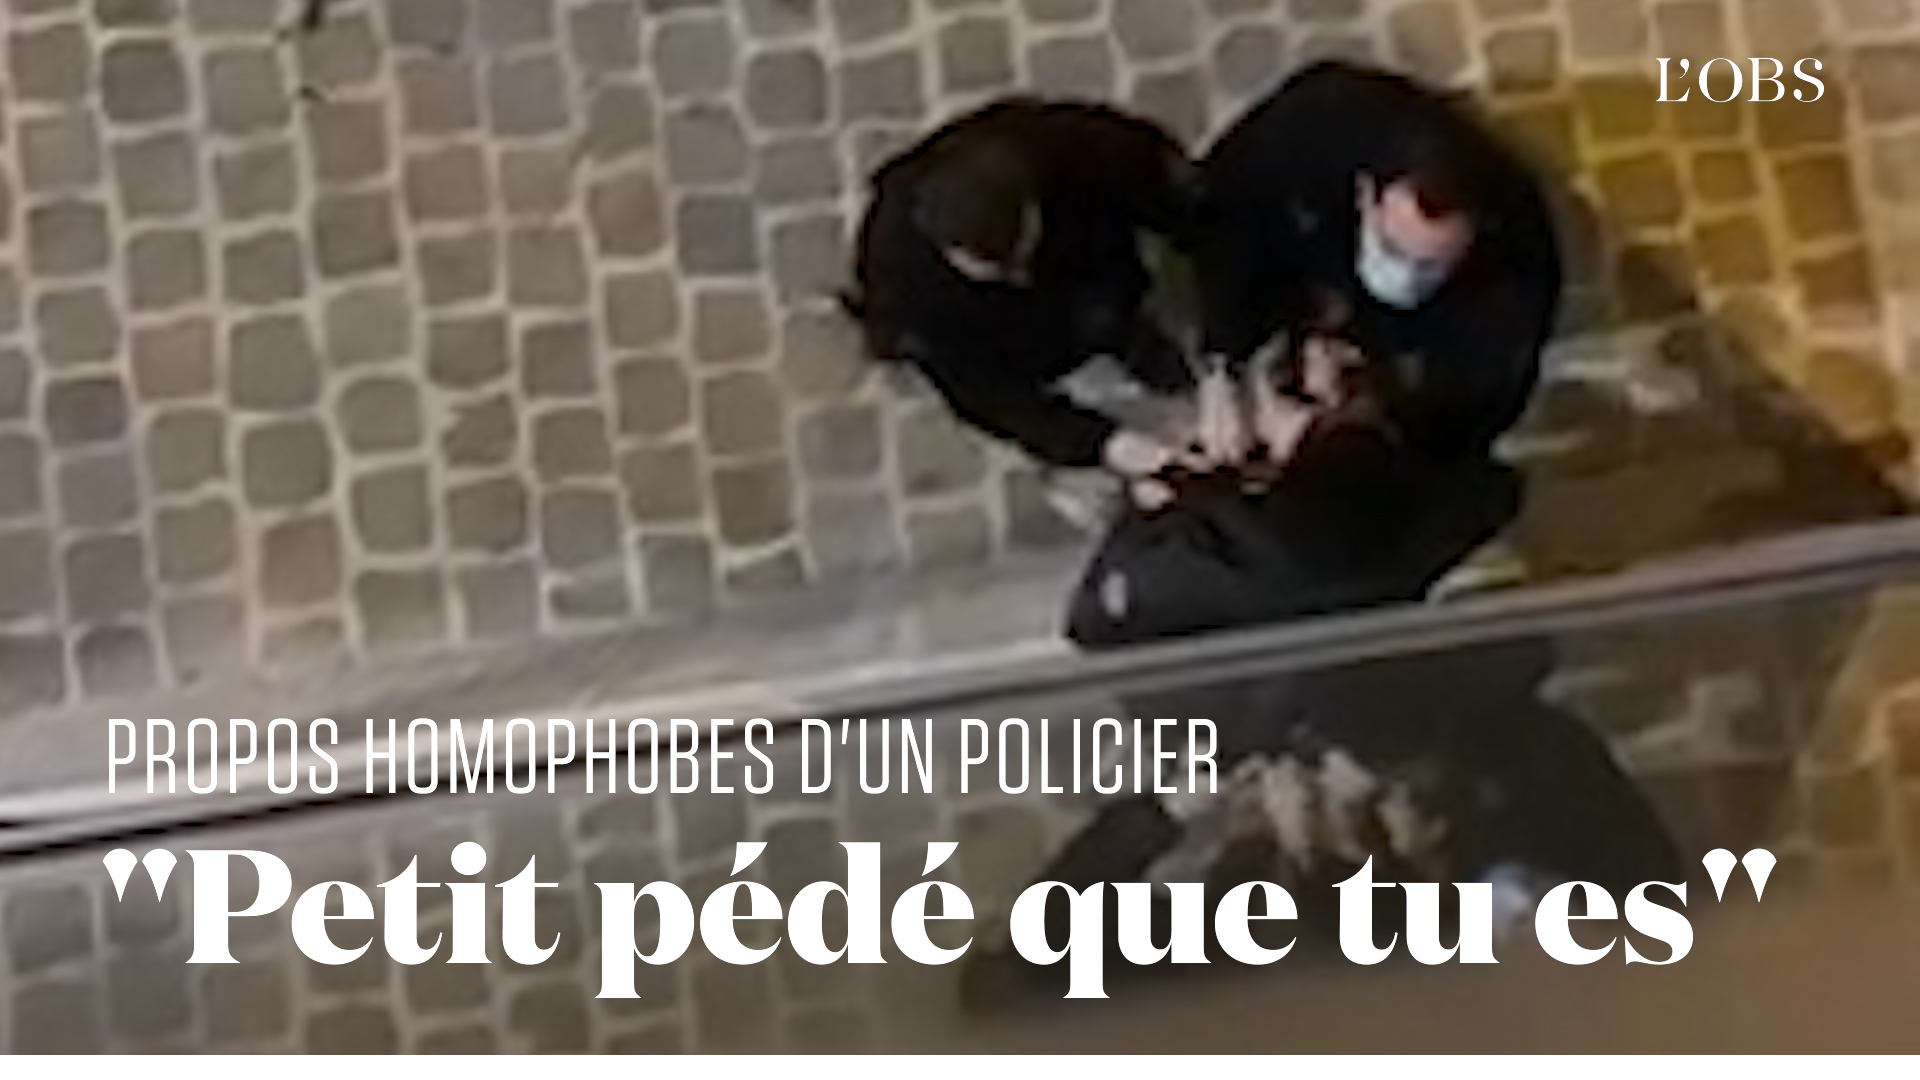 Un jeune homme se fait traiter de "petit pédé" par un des policiers qui l'interpellent à Paris